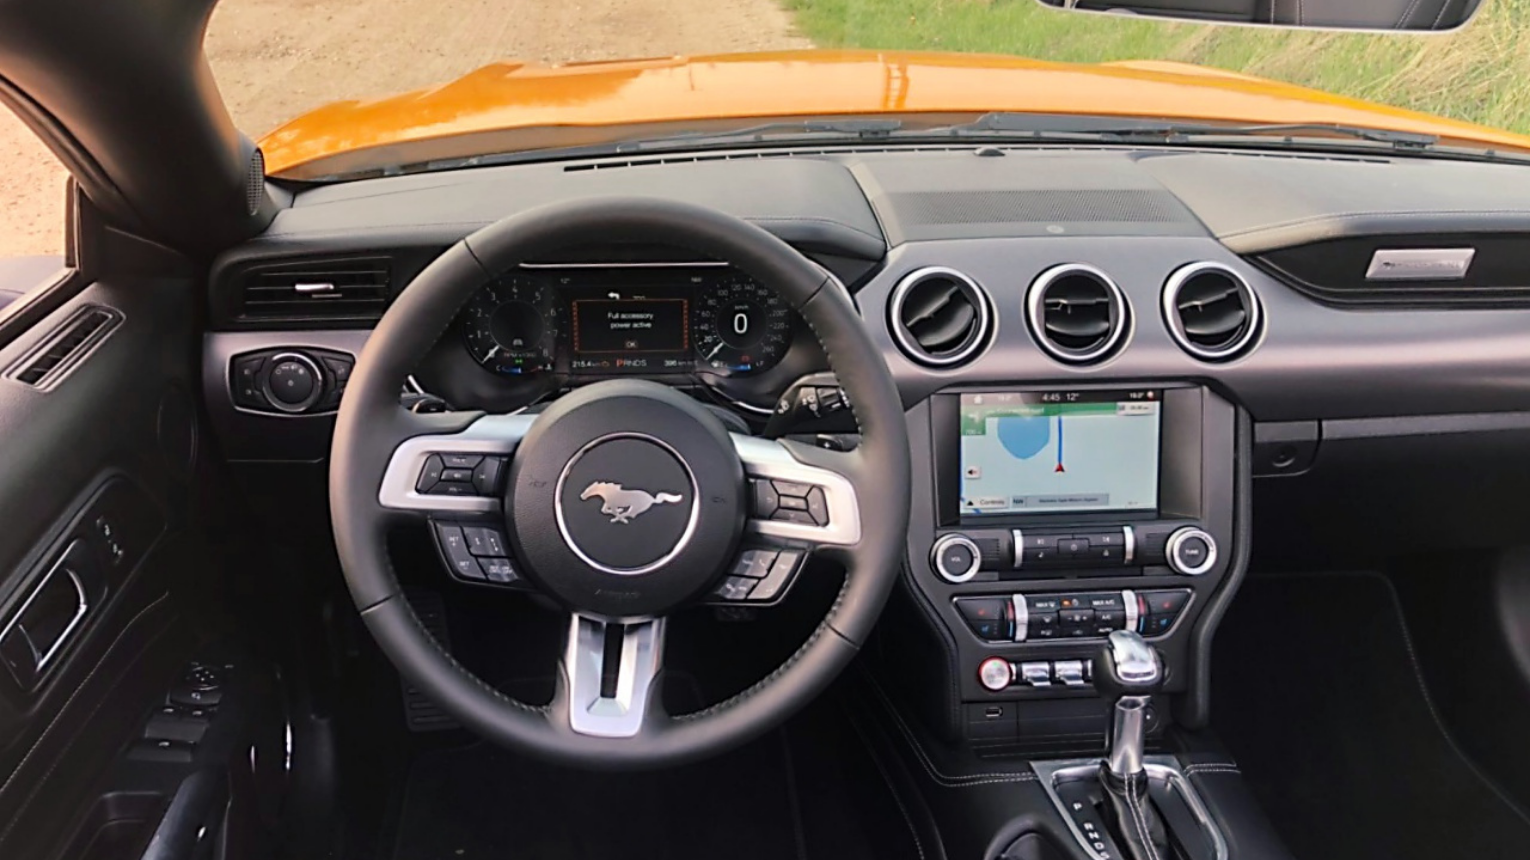 Ford Mustang 5.0 GT V8 CONVERTIBLE autópályás élményvezetés 4